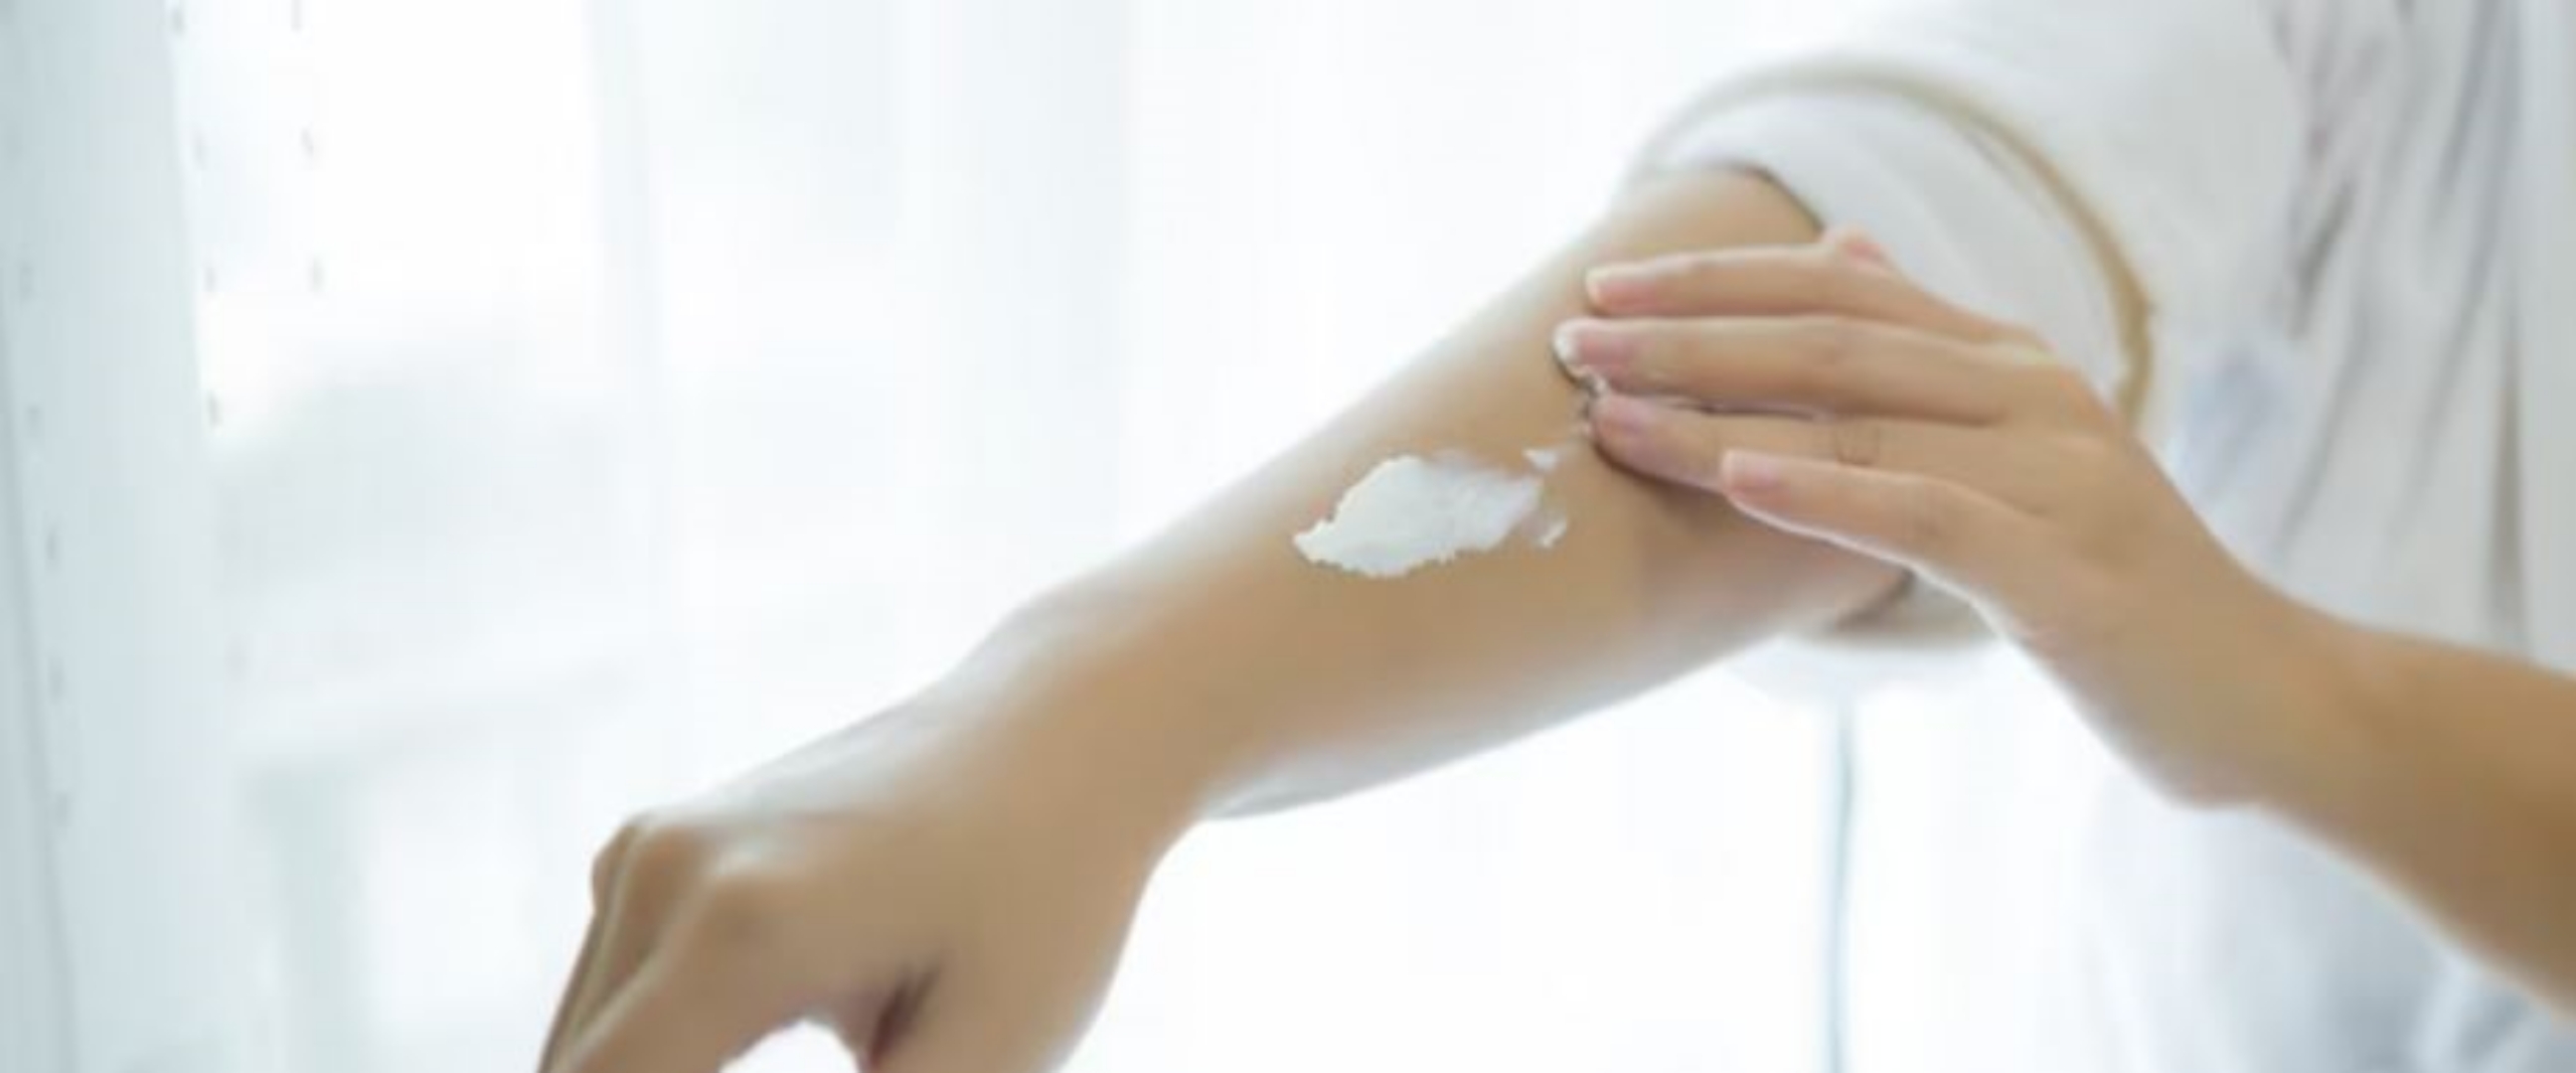 Bikin lembut dan antikering, cara bikin body lotion ini cuma pakai 3 bahan alami